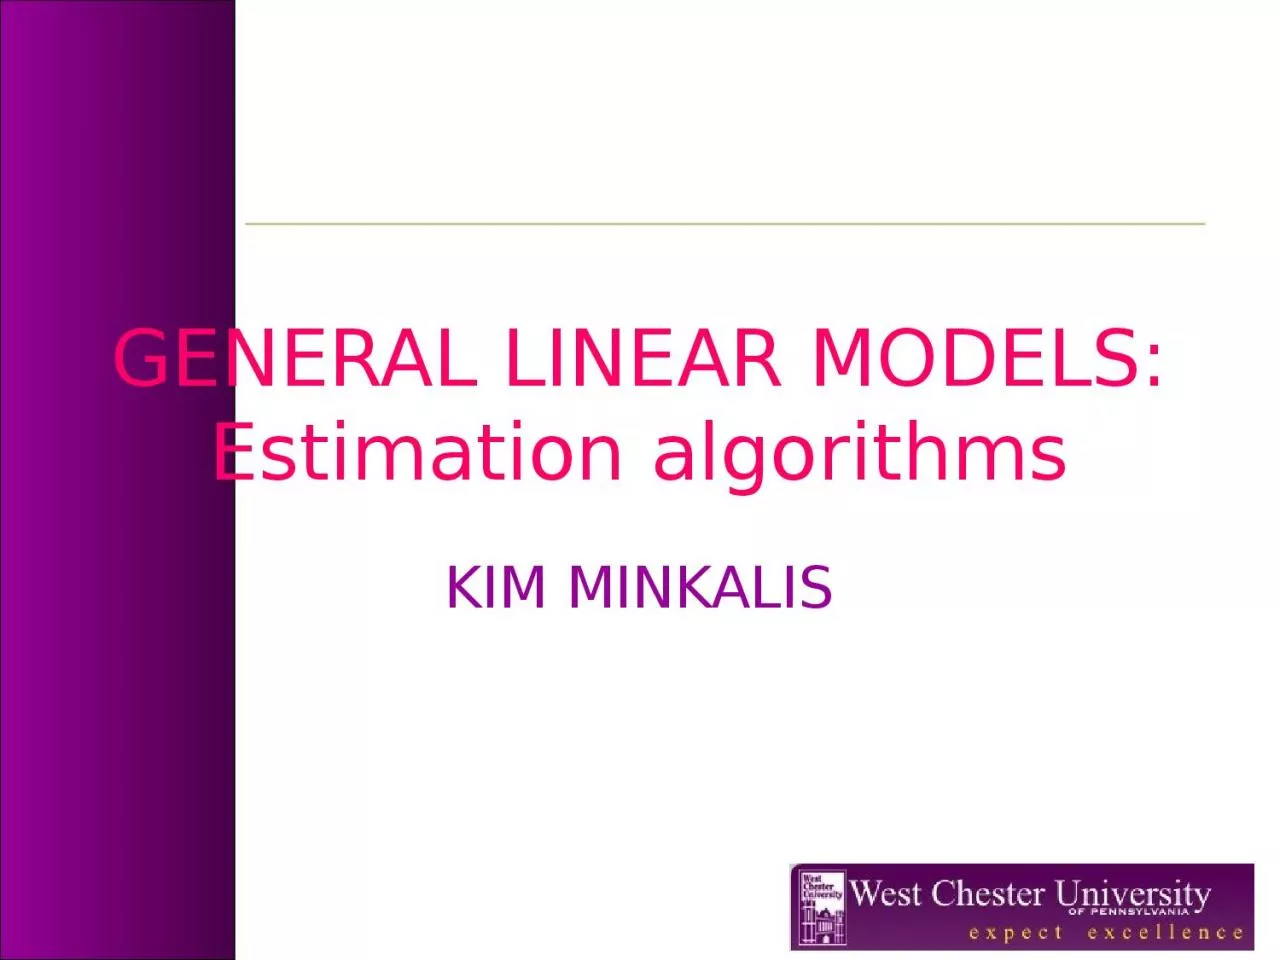 GENERAL LINEAR MODELS: Estimation algorithms